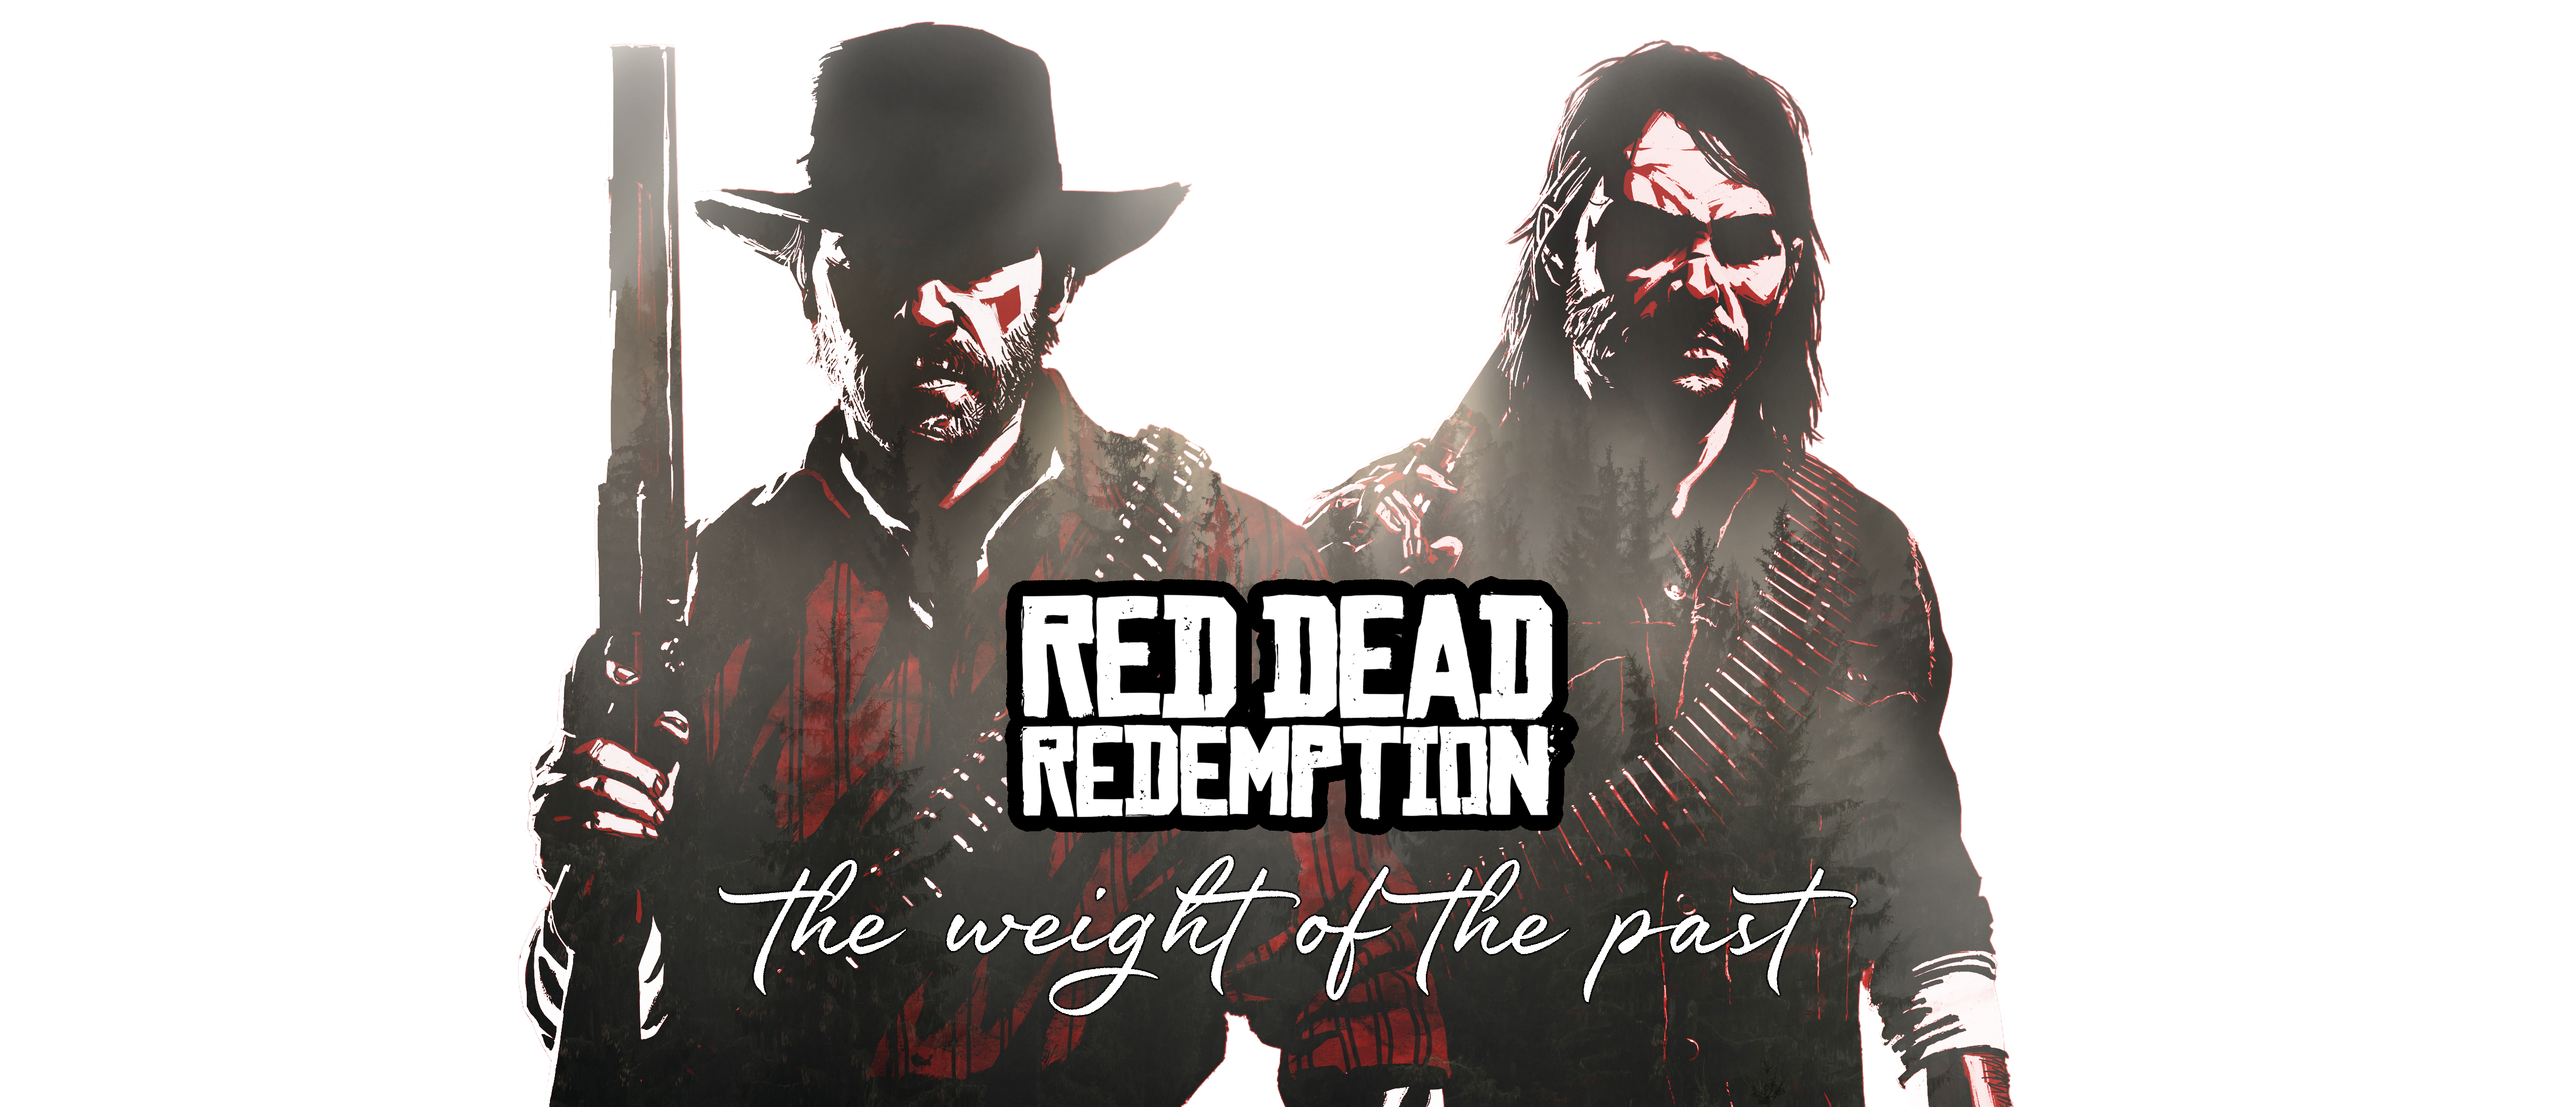 Red Dead Redemption Red Dead Redemption 2 Arthur Morgan John Marston Rockstar Games Video Games Vide 5120x2200